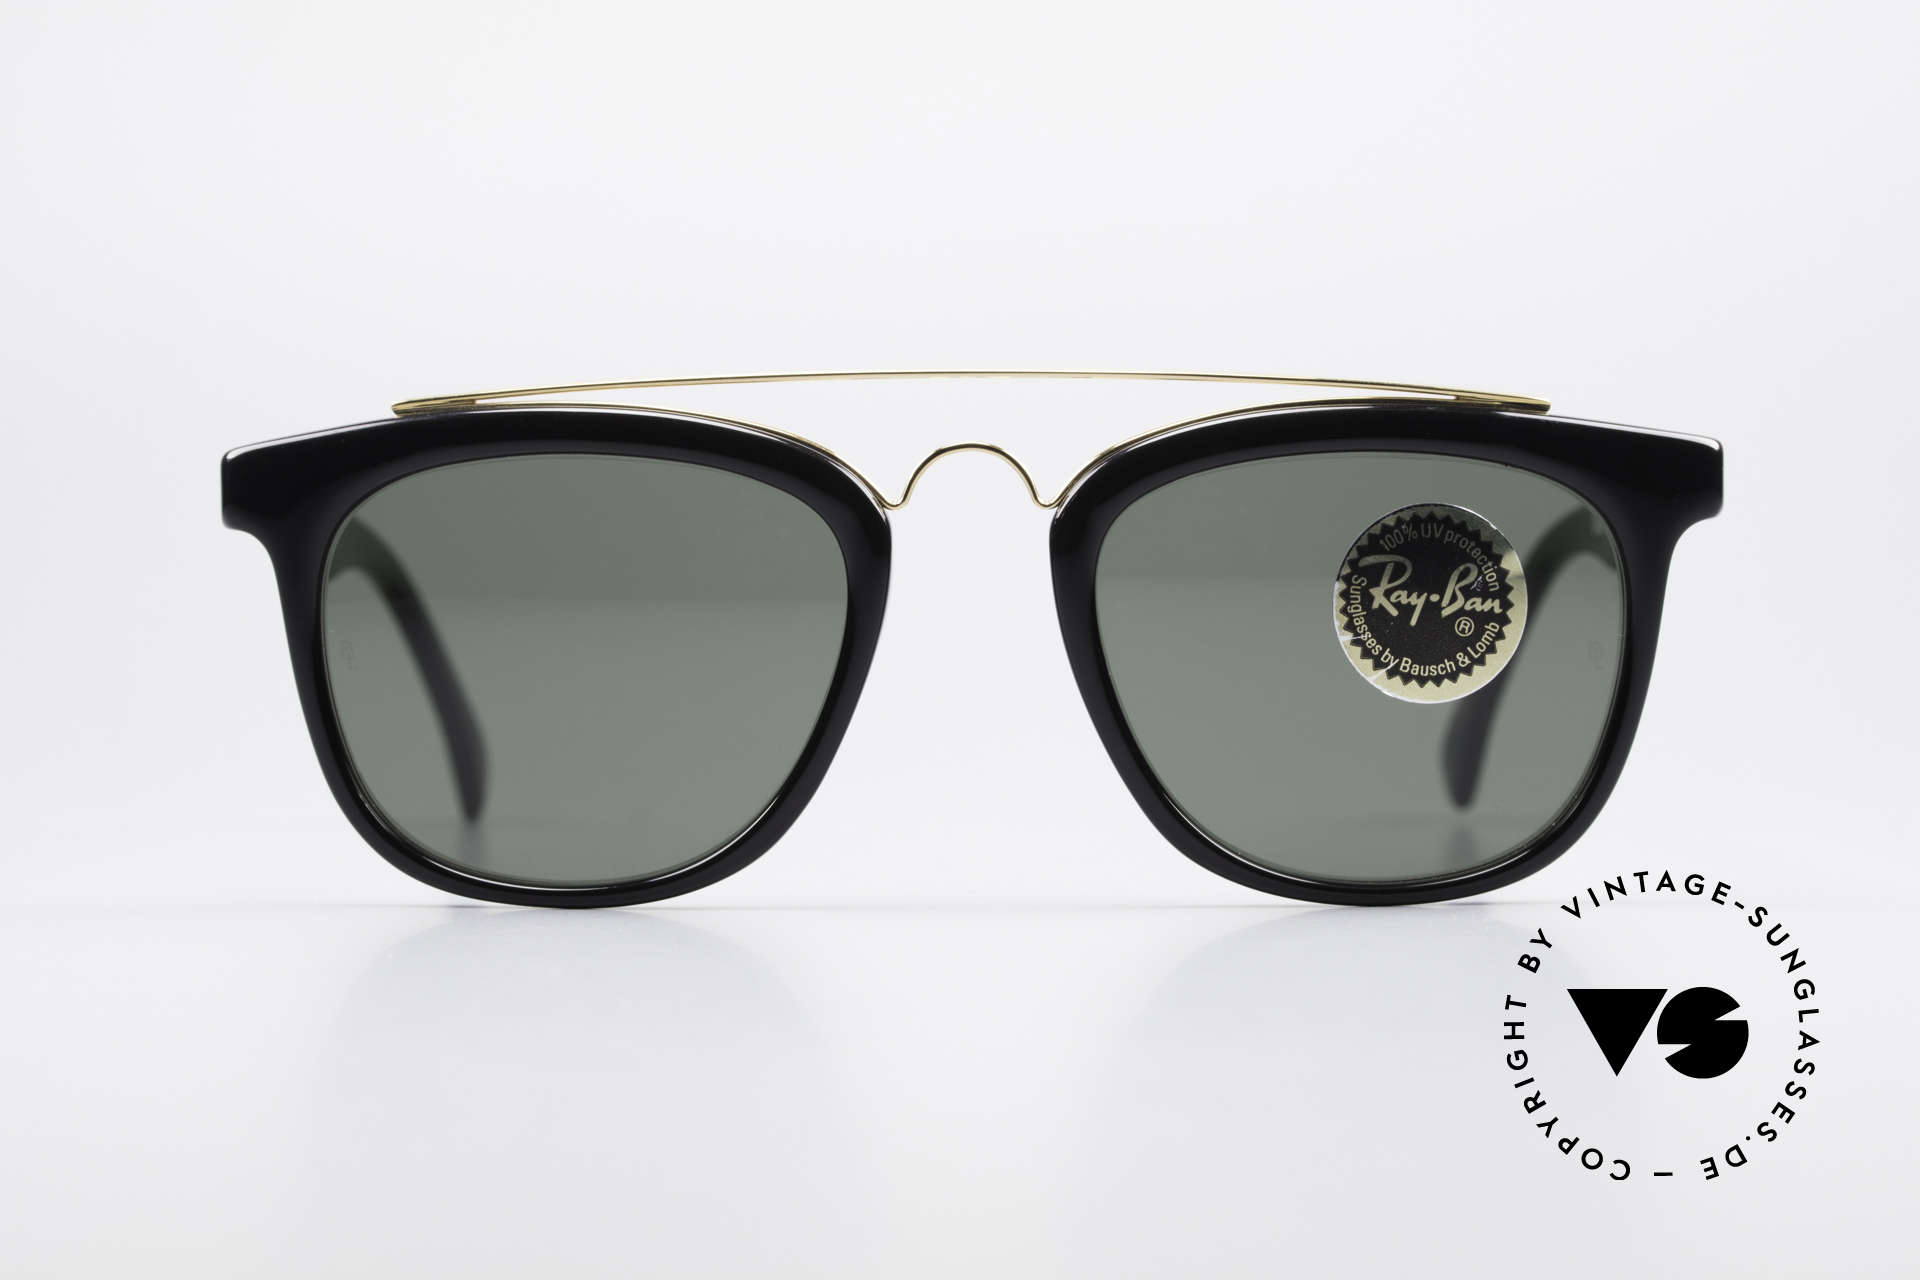 Sunglasses Ray Ban Gatsby Style 5 USA 